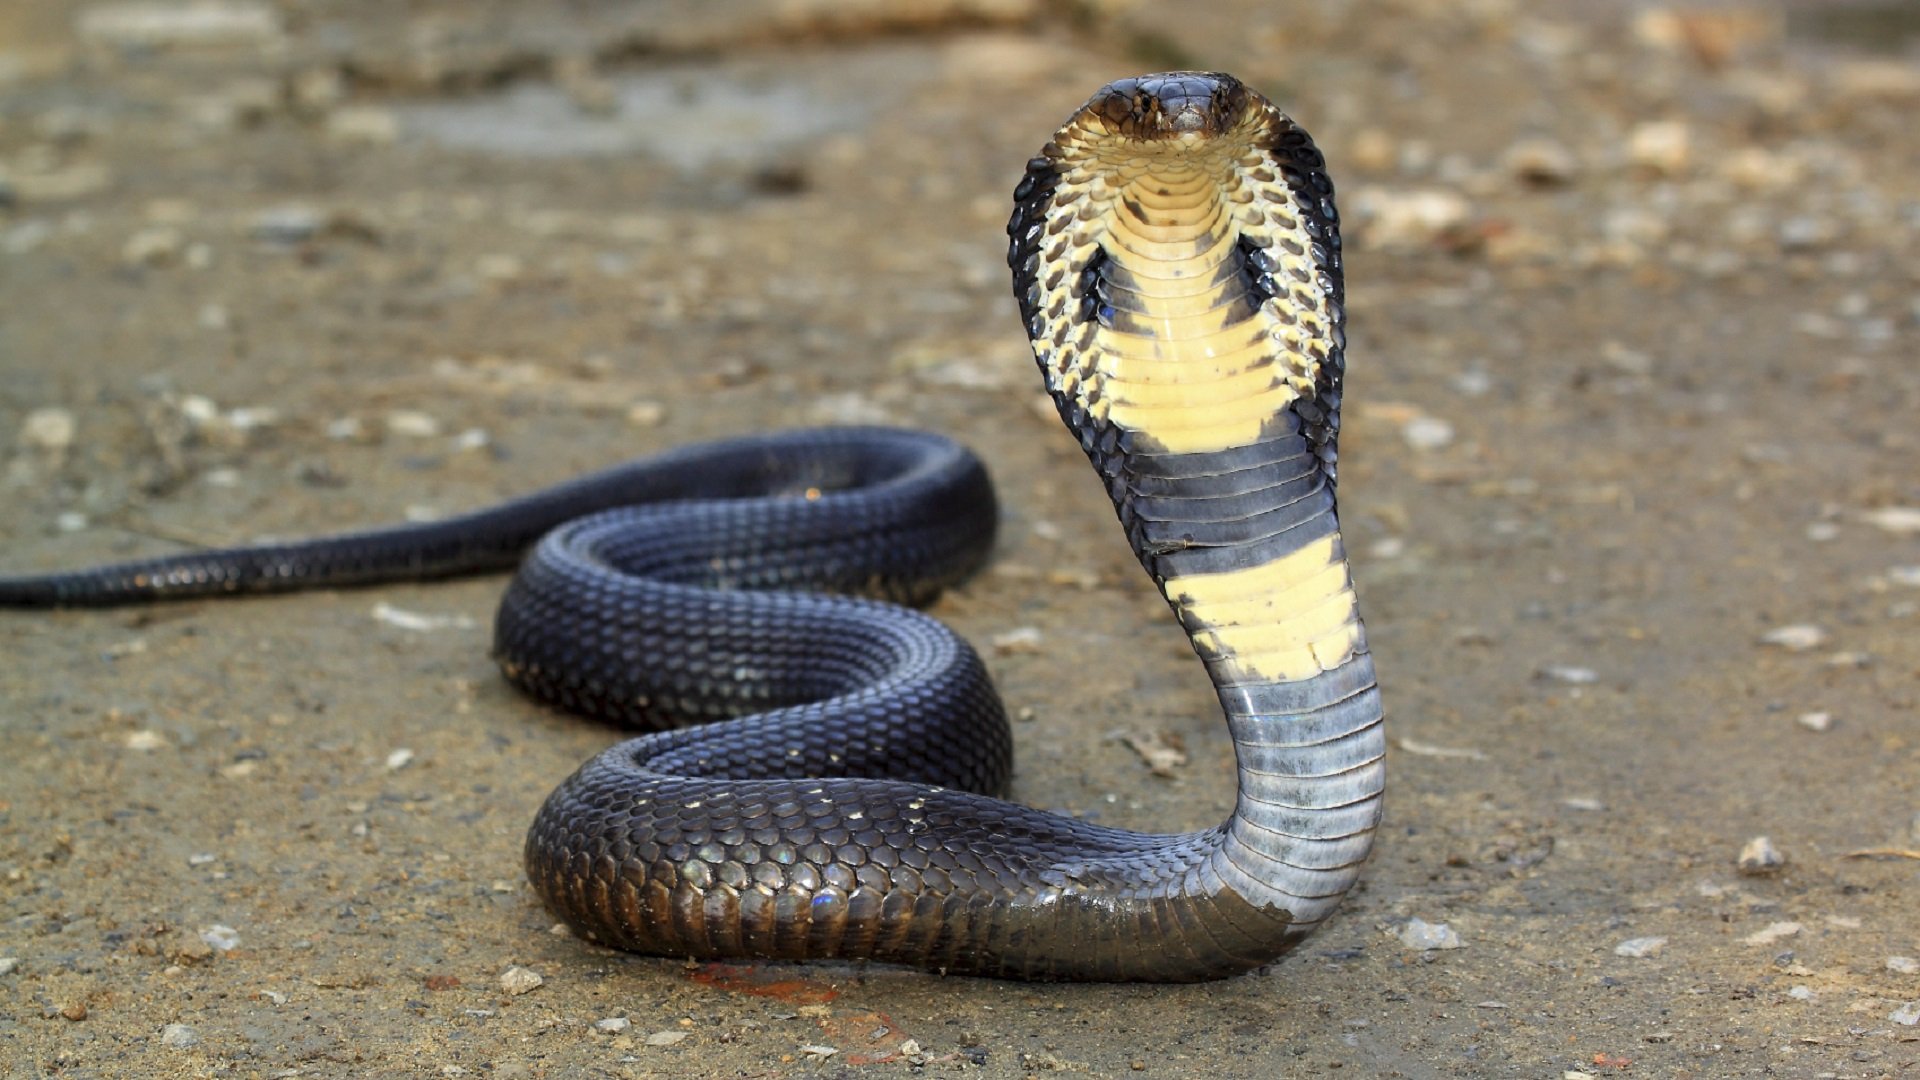 King Cobra Snake Wallpaper